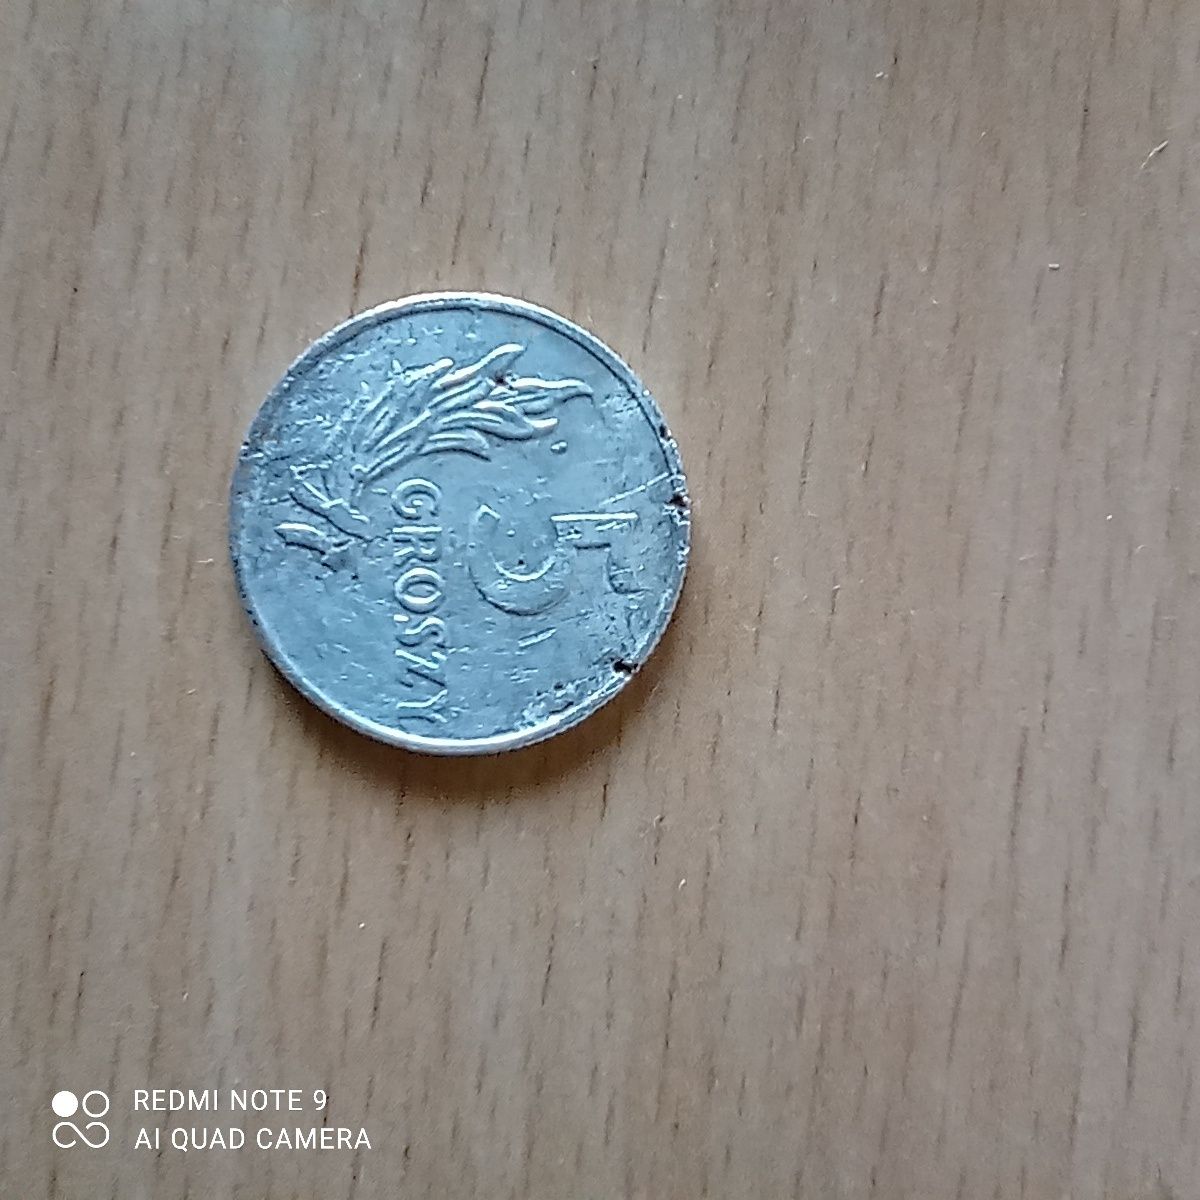 Moneta 5 groszy 1949 aluminium